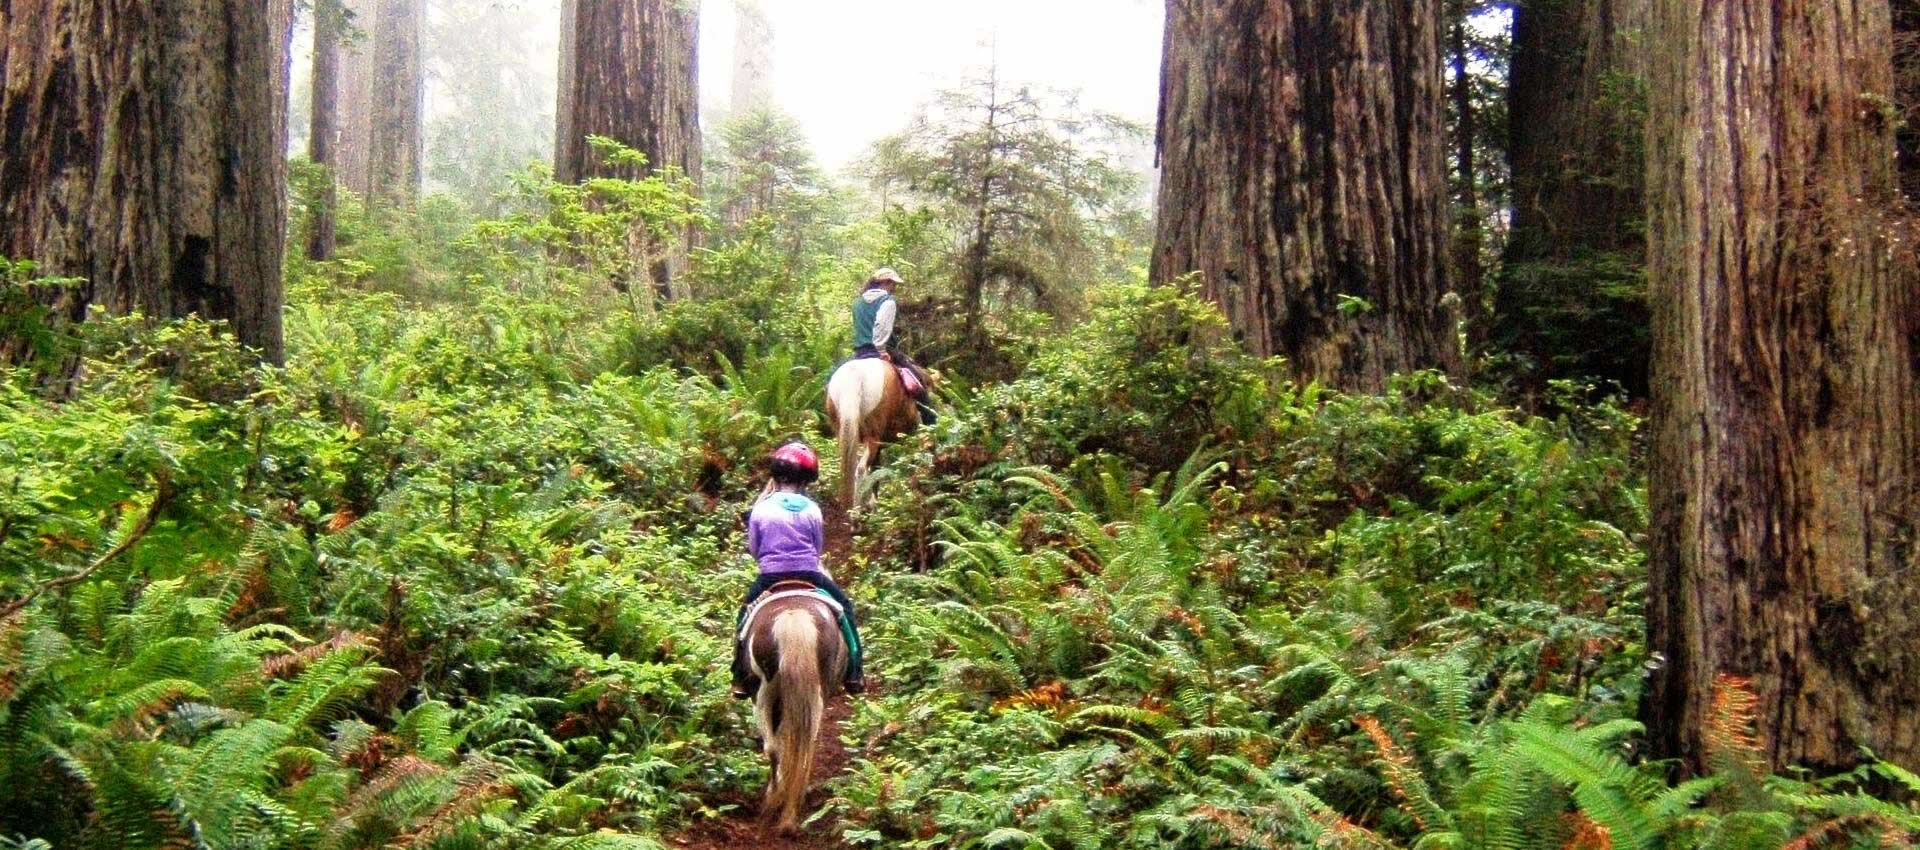 Horseback riding in the Redwoods